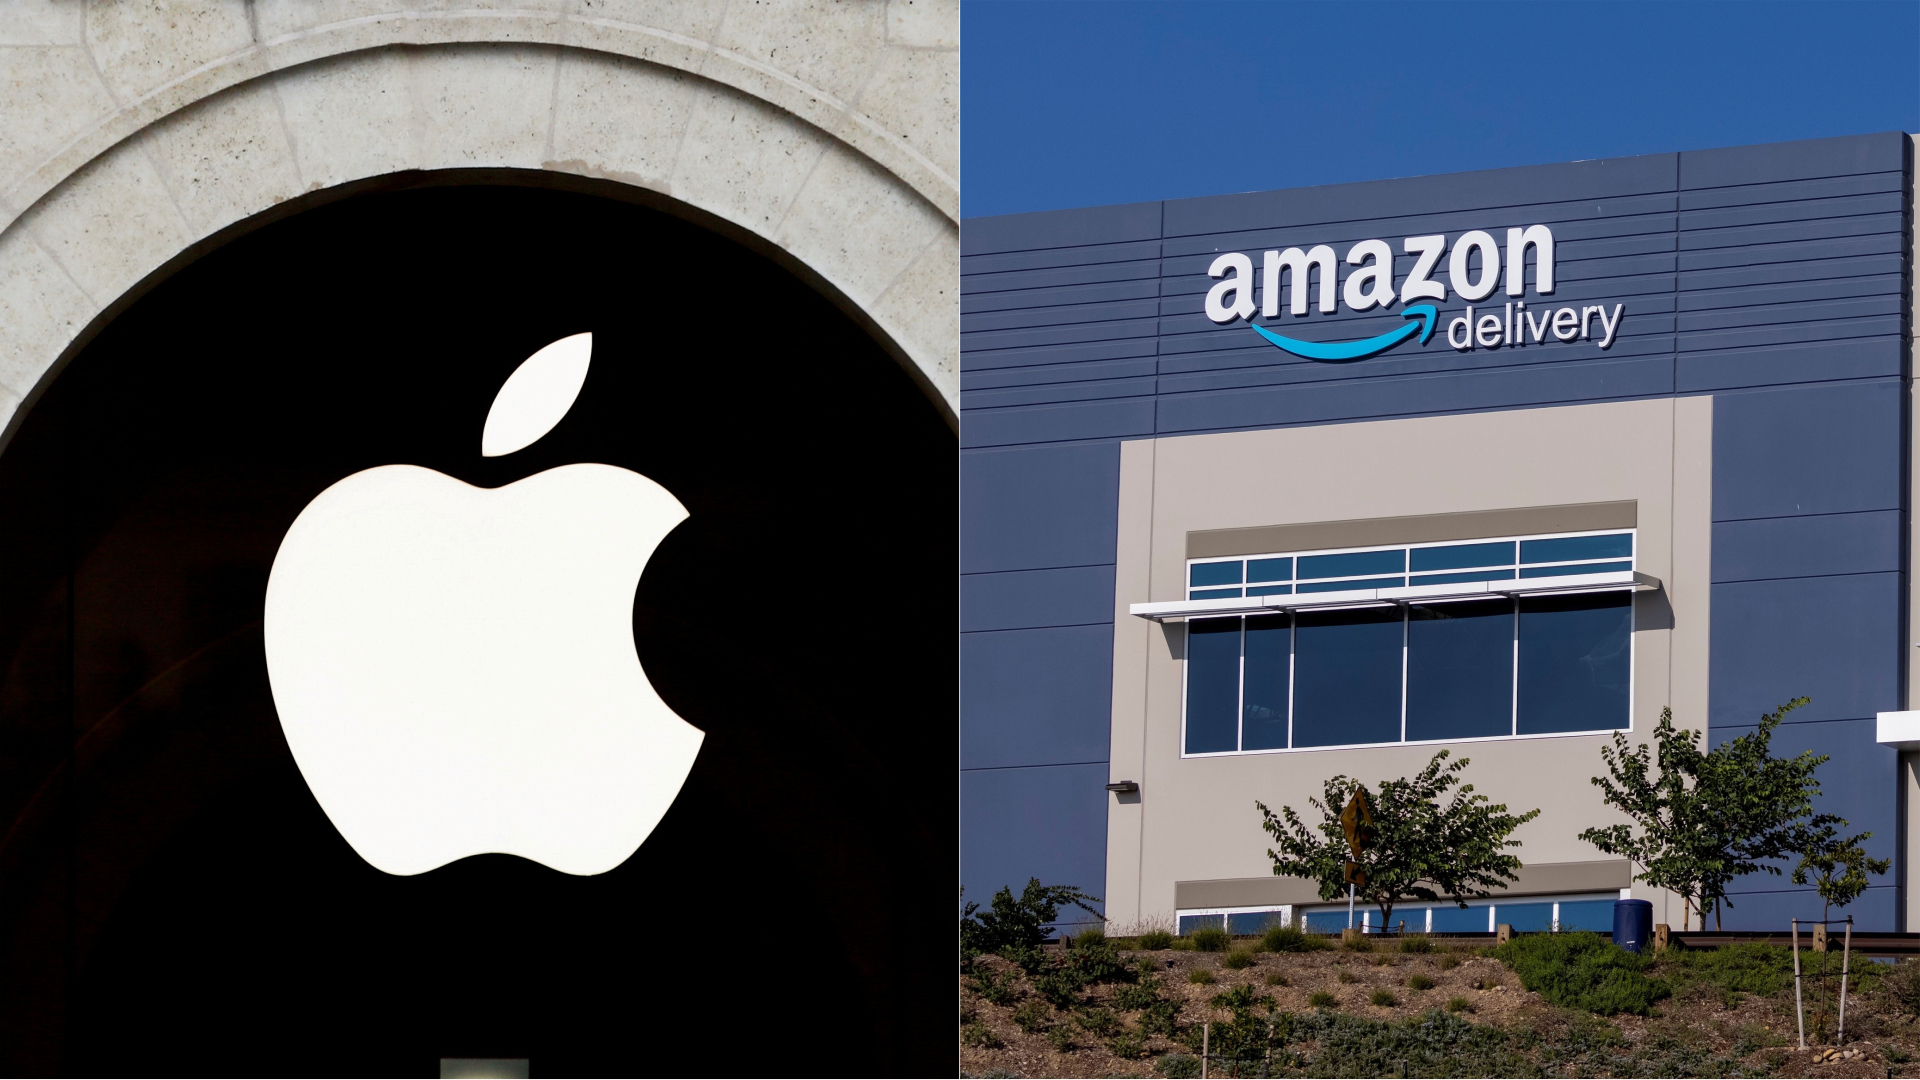 Apple - Amazon : Ιταλικό πρόστιμο 225 εκατ. ευρώ για μονοπωλιακές πρακτικές